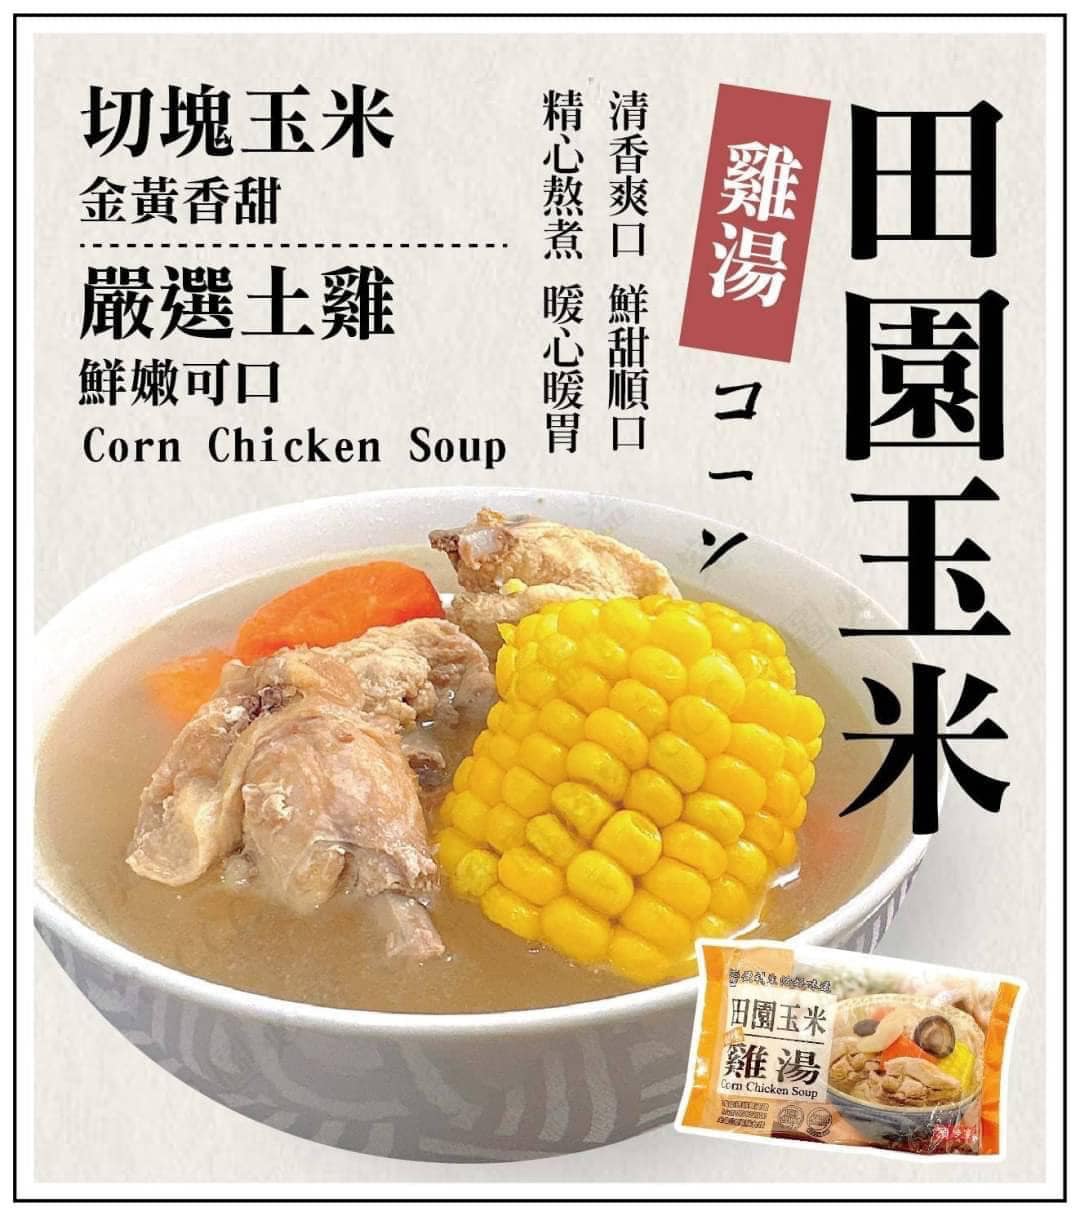 低溫配送_產品名稱:田園玉米雞湯